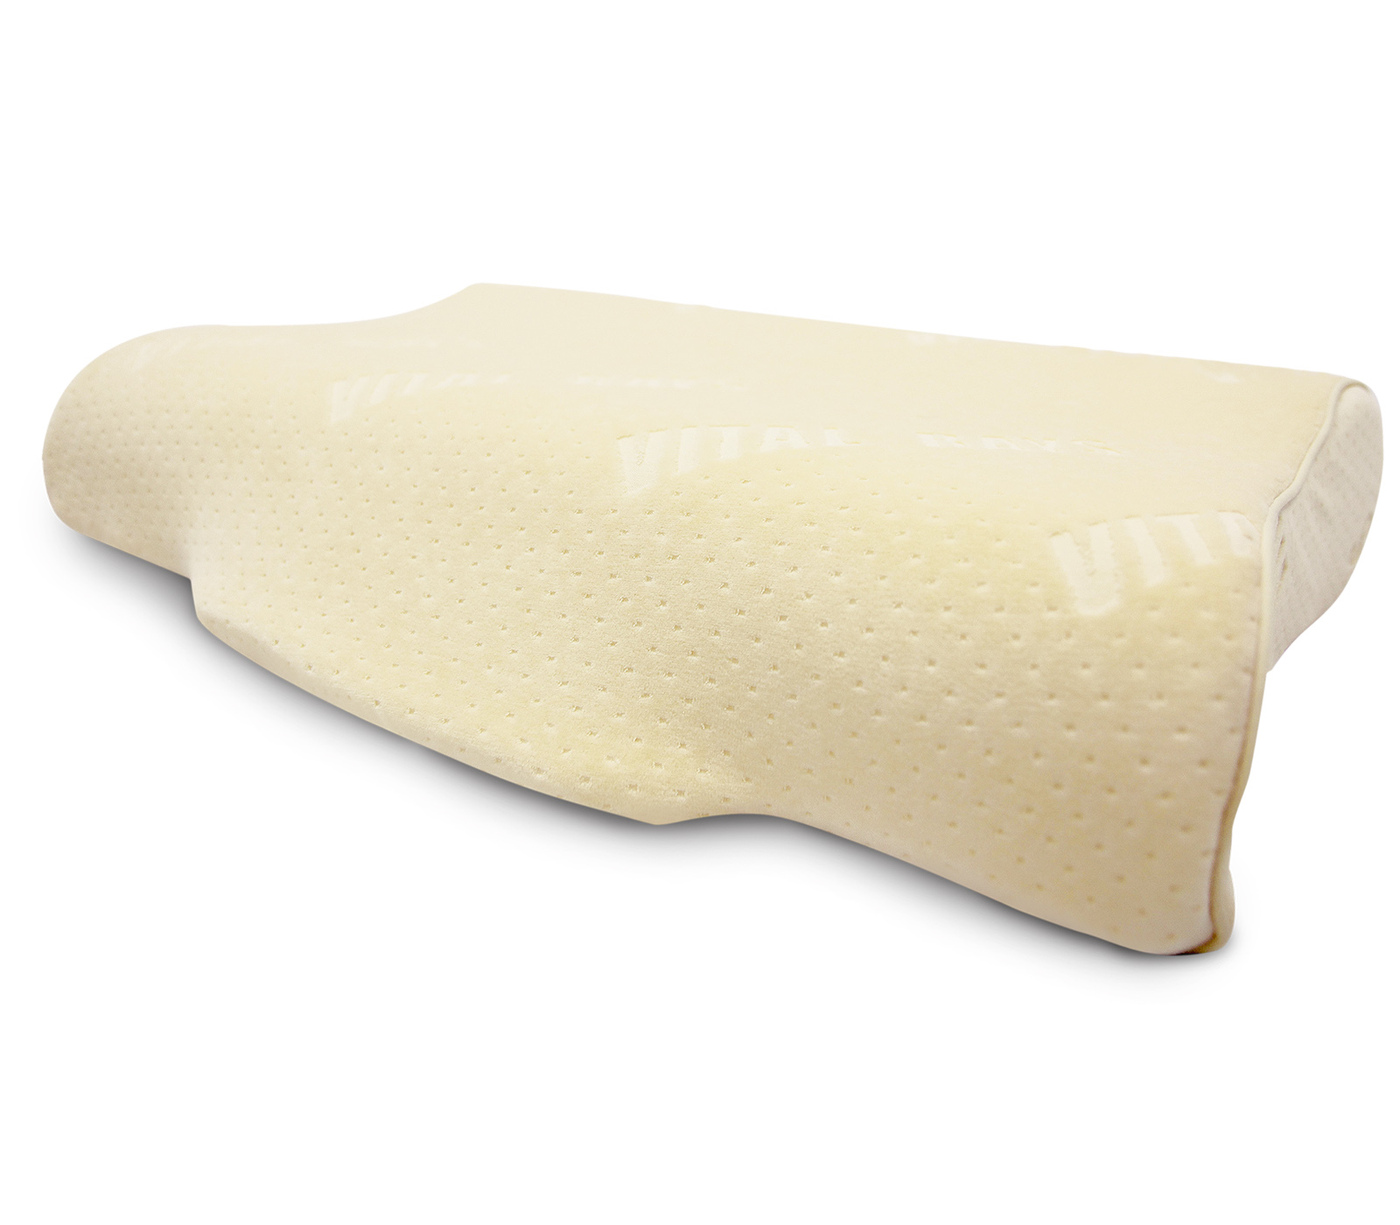 Подушка сладкий сон. Нефритовая ортопедическая подушка. Подушка Нефритовая сладкий сон. Подушка "сладкие сны". Ортопедическая подушка 31x52см, Vital rays высота 10.5 см.